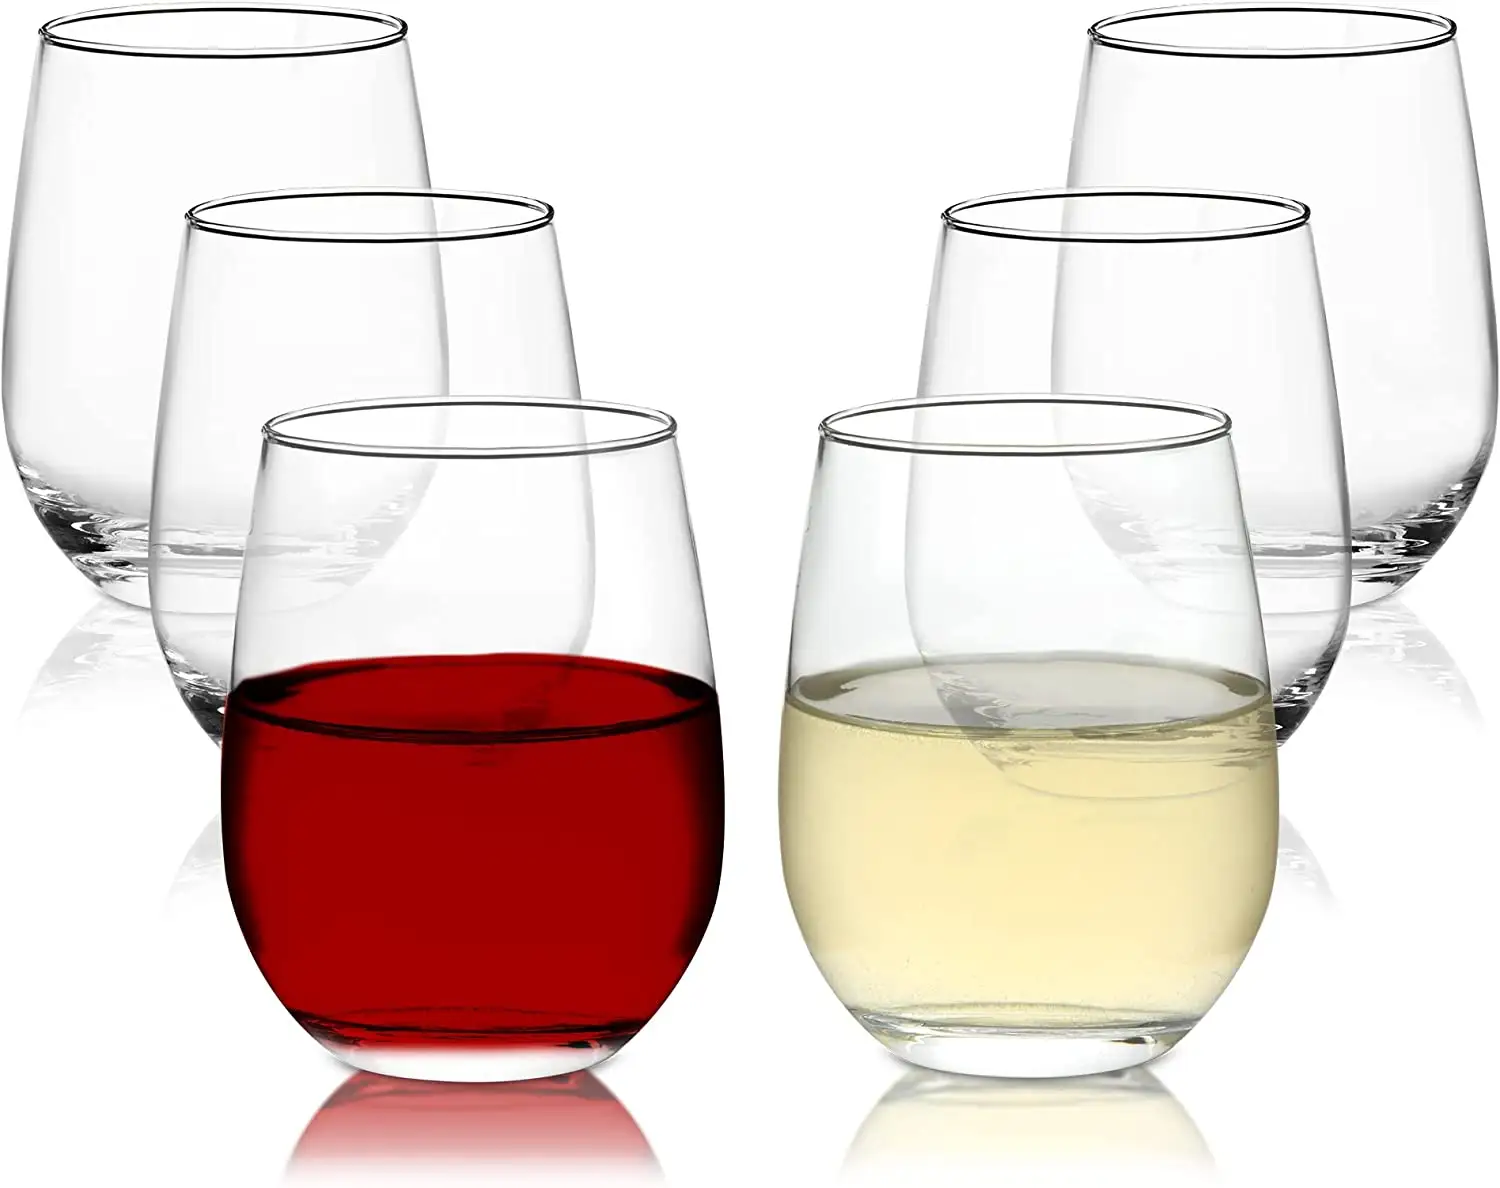 Hochwertiges Eierform-Trinkglas verdickter Boden gute Stabilität stamm loses Weißwein glas